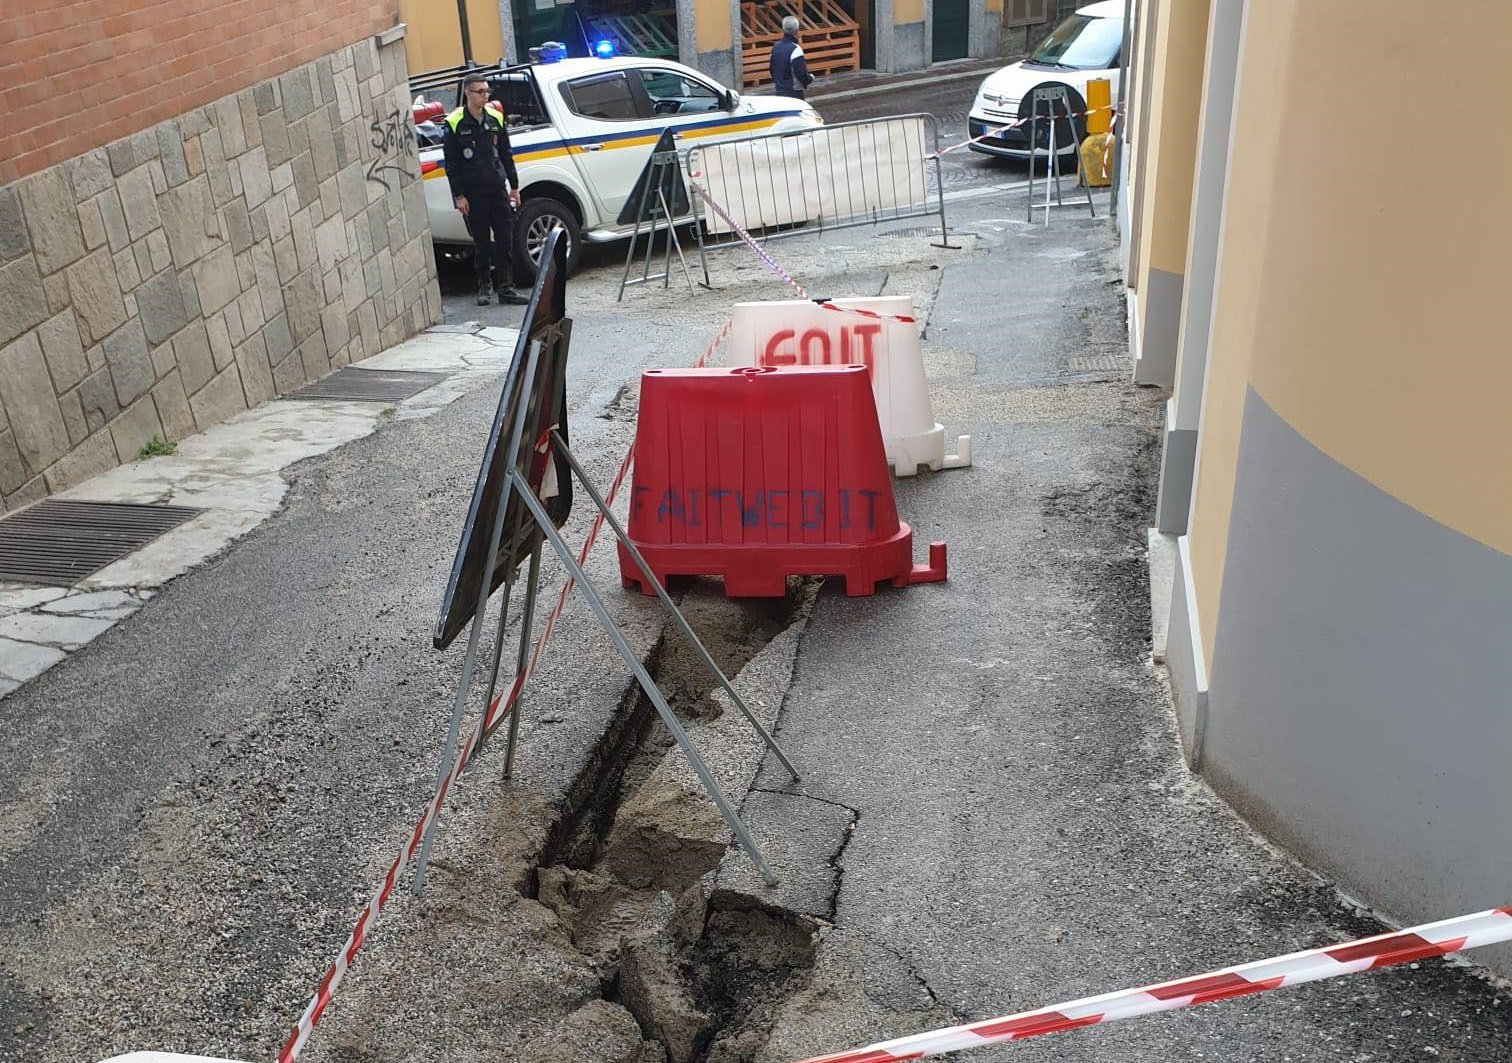 Maltempo: a San Salvatore chiusa via Boccaccio dopo la fuoriuscita di ghiaia dal cantiere